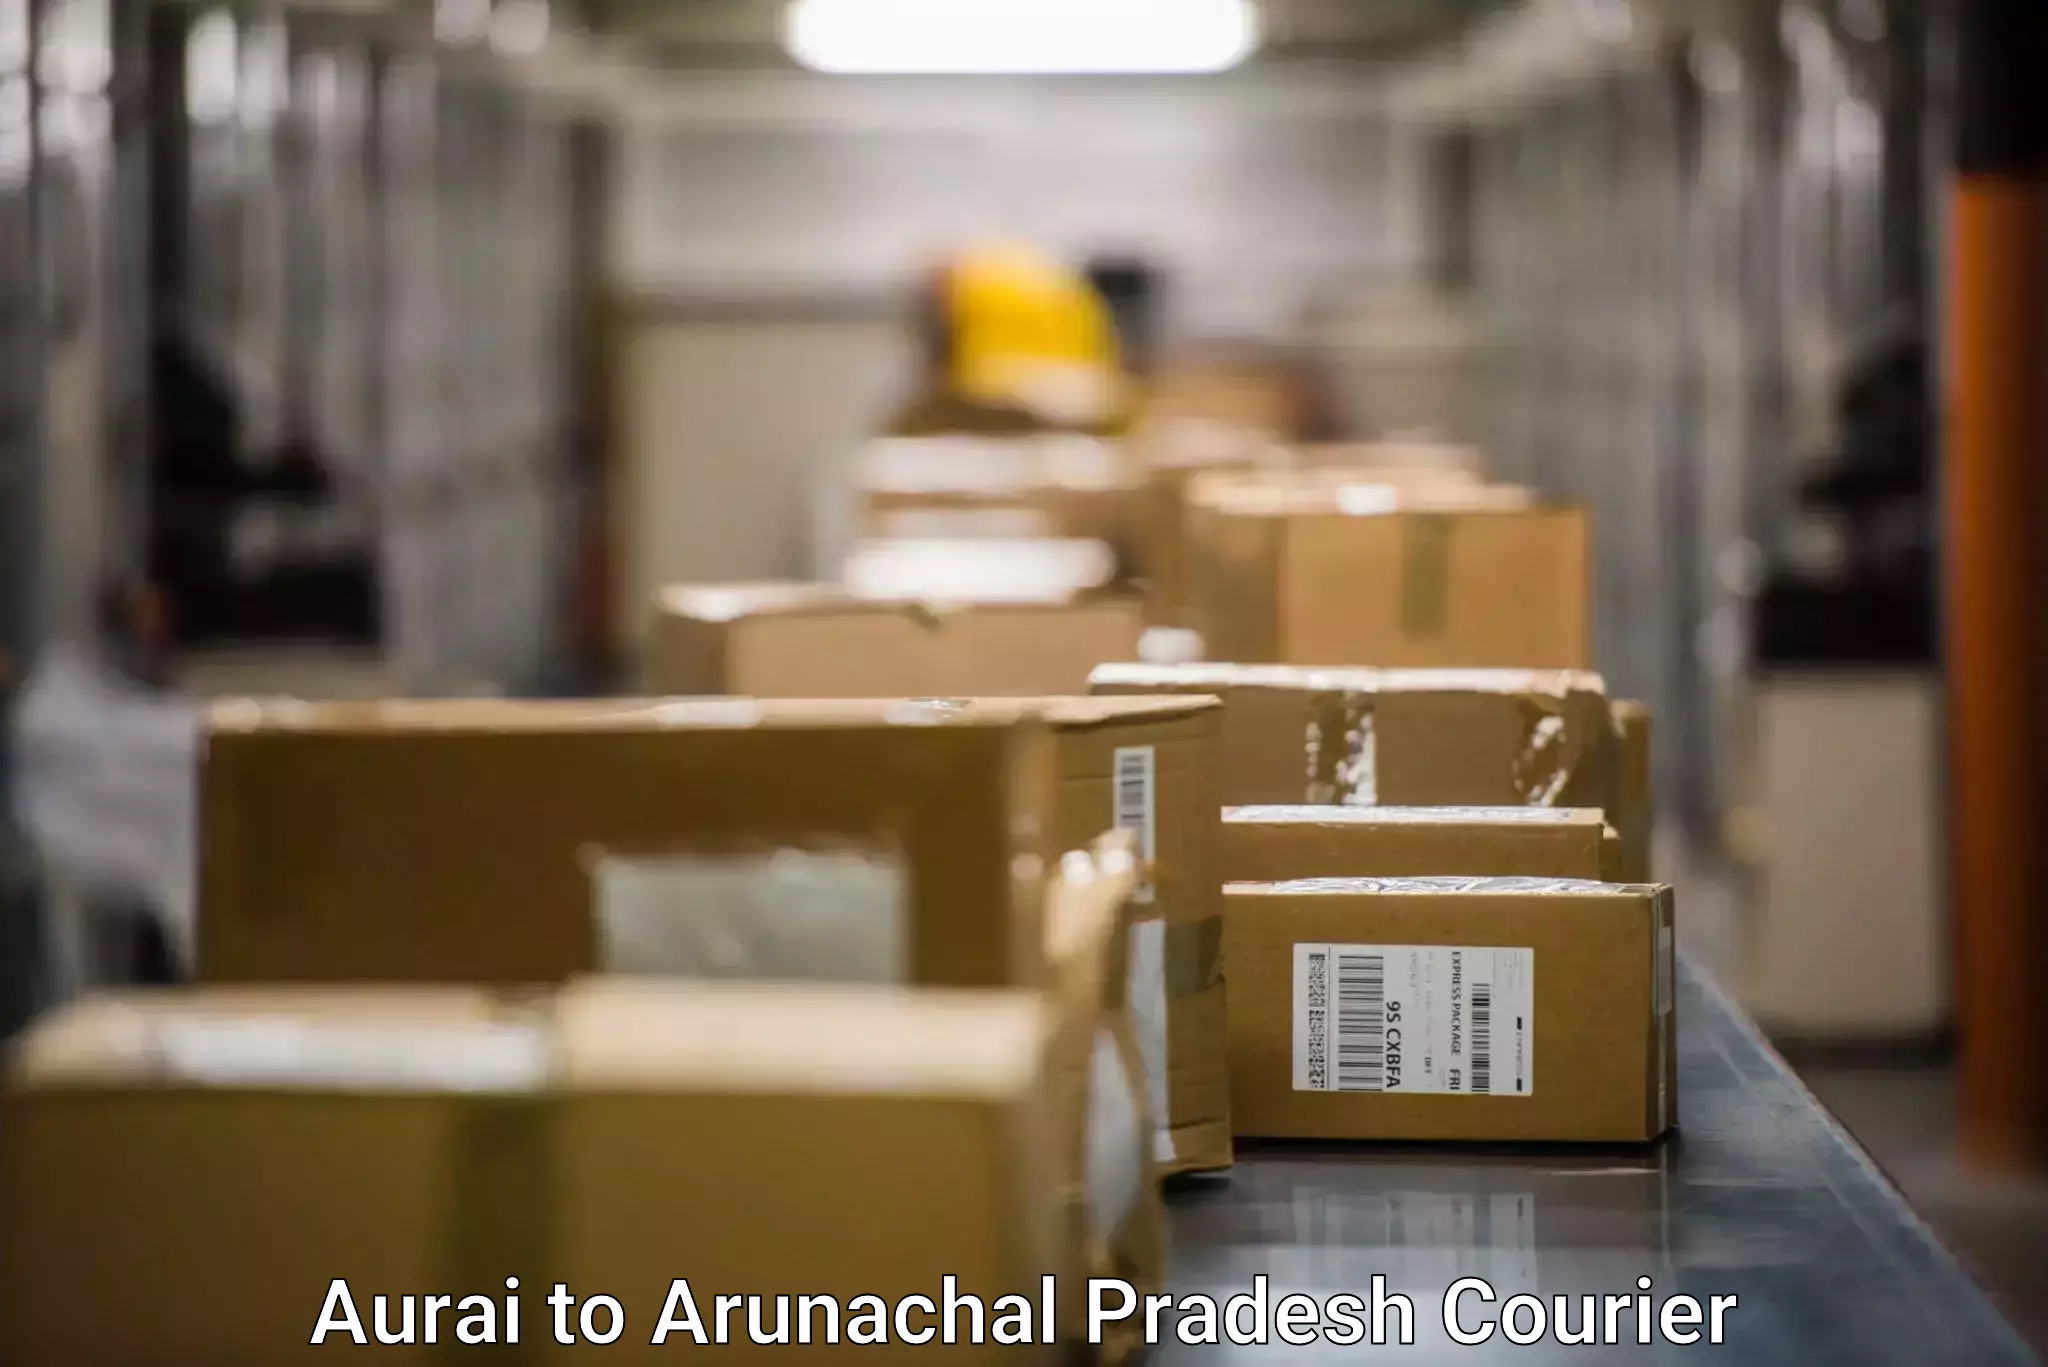 On-demand courier Aurai to Arunachal Pradesh